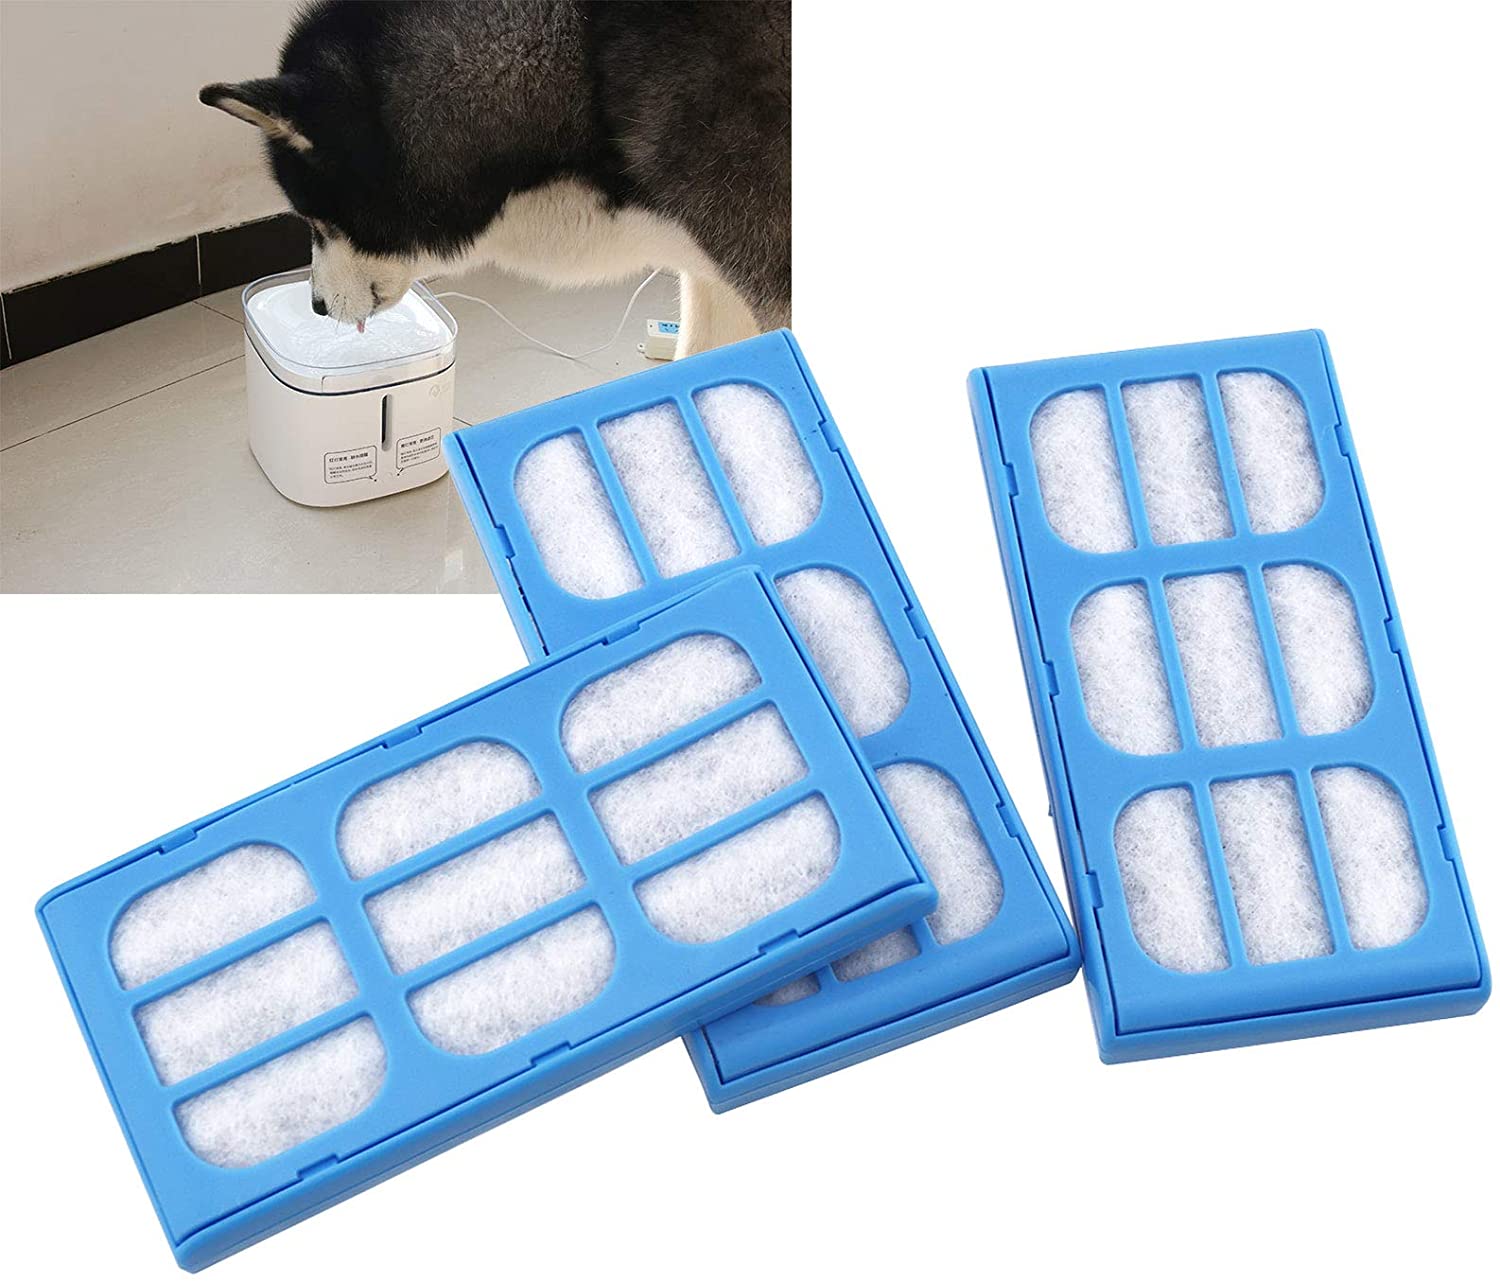  ENET - 6 Cartuchos de Filtro de purificación de Agua para Fuentes Cat Mate de 10,8 x 5,5 x 1,1 cm 